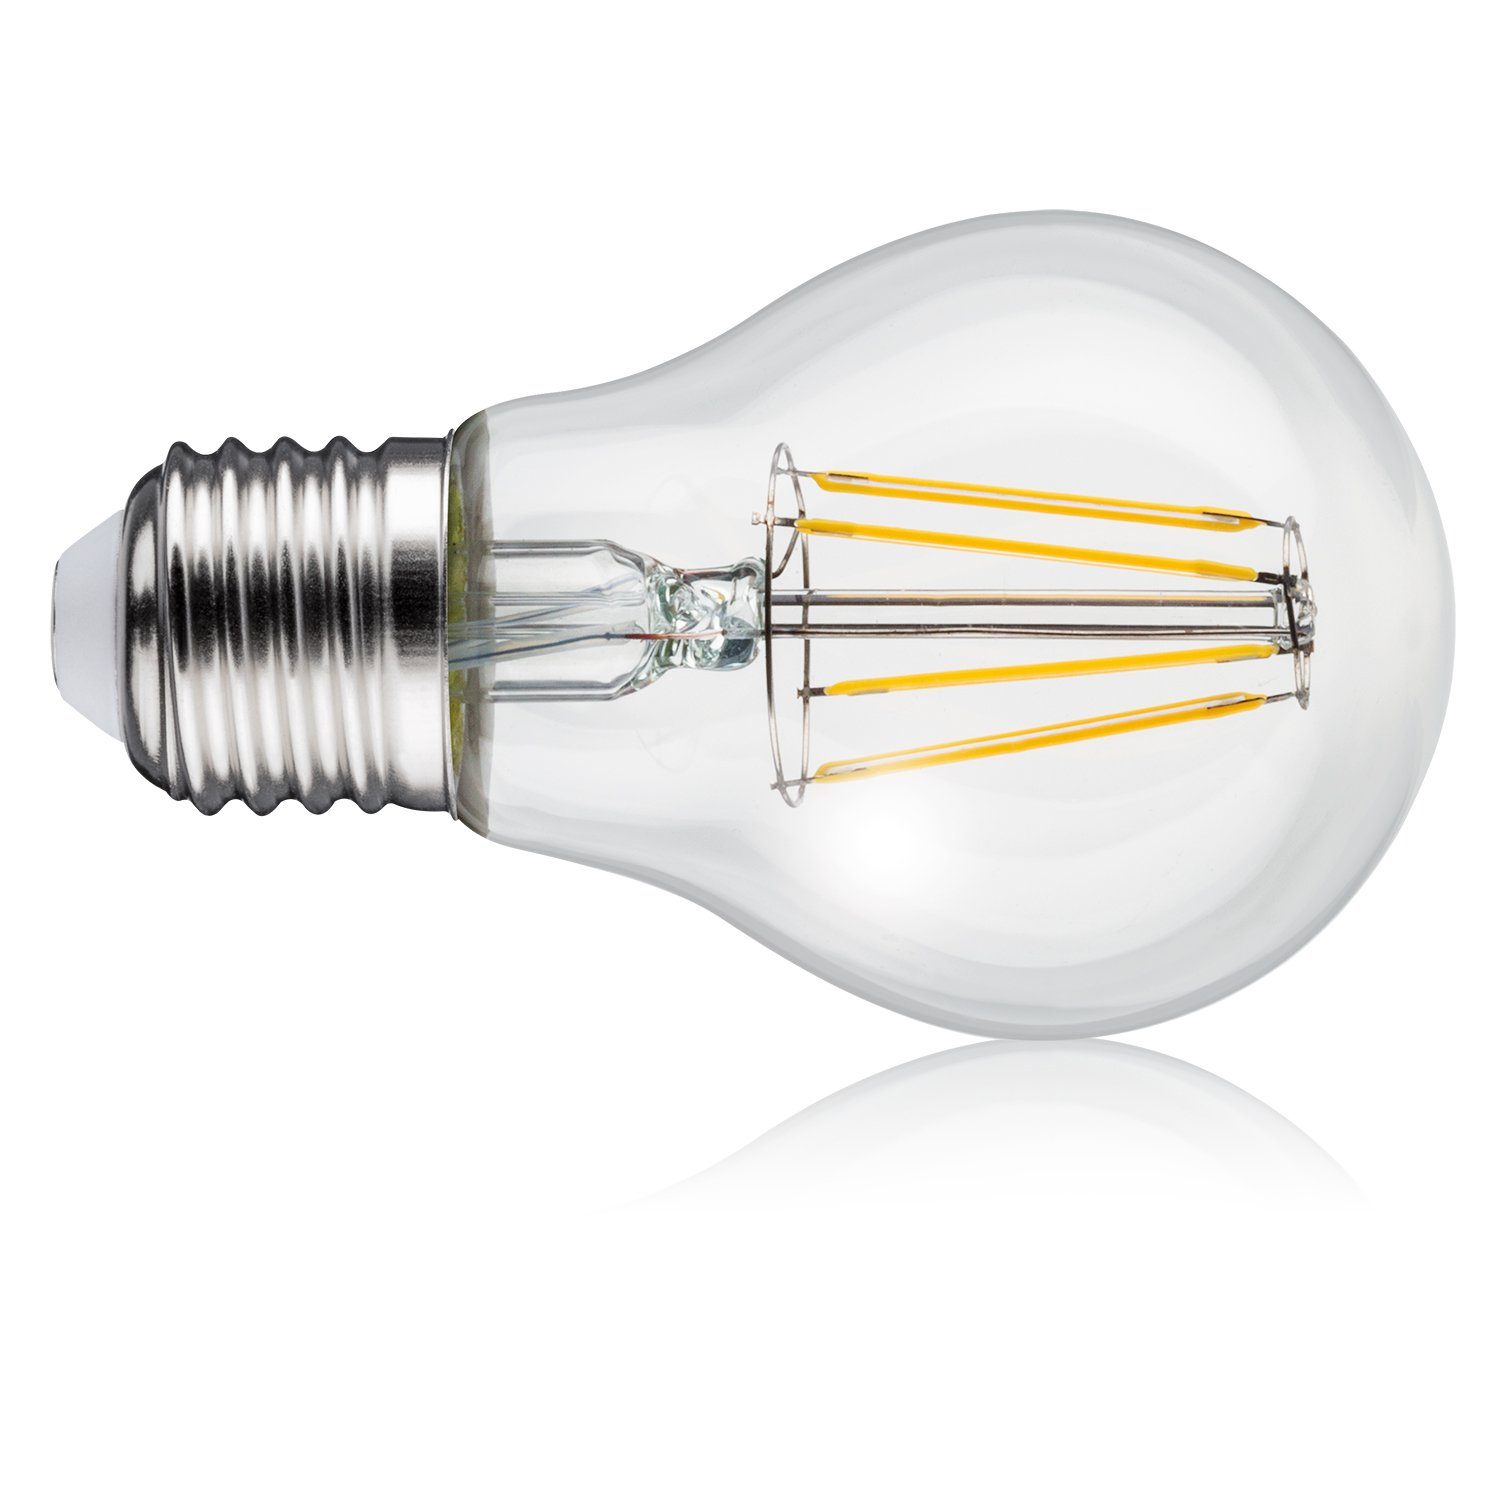 Maclean LED-Leuchtmittel MCE268 WW, LED Warmweiß, Retro E27, Glühbirne Filament Edison 806lm 8W